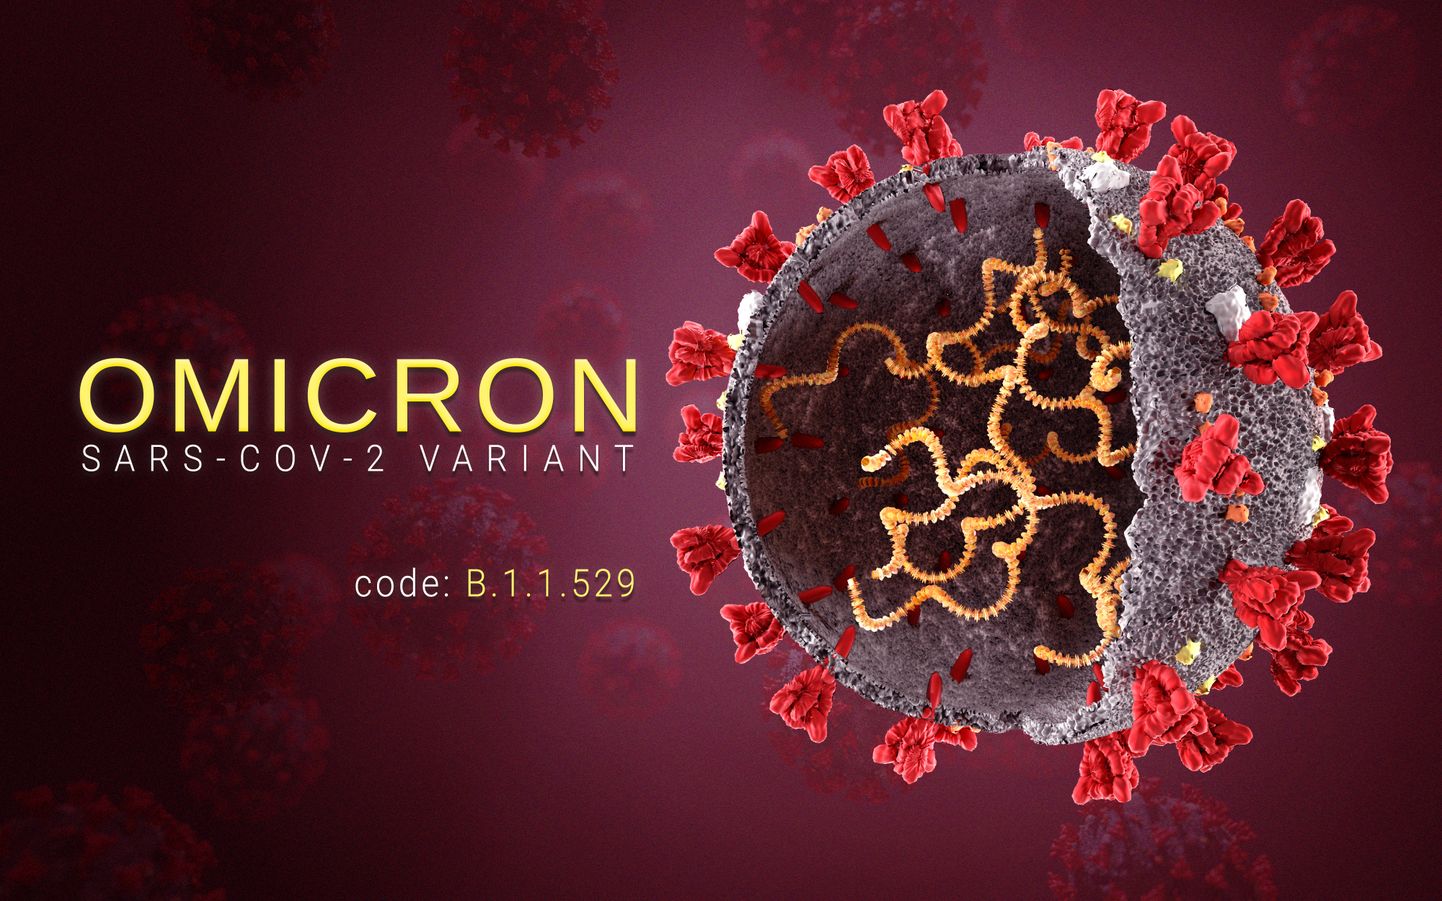 Uue koroonaviiruse SARS-CoV-2 omikrontüvi levib maailmas väga kiiresti